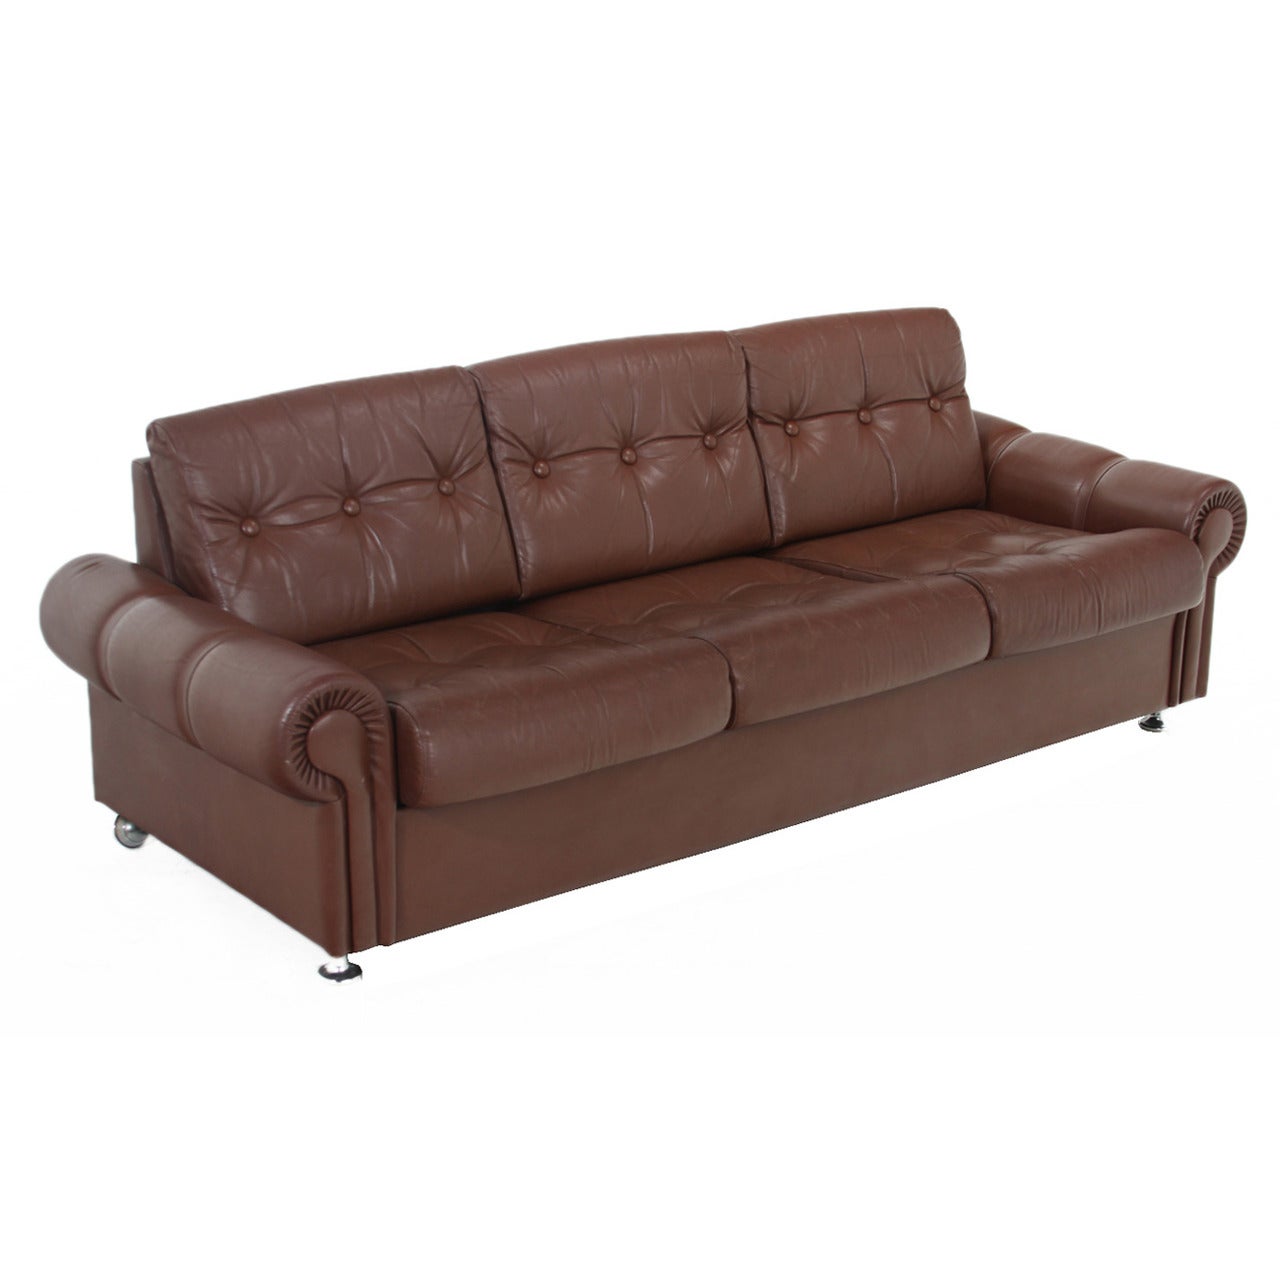 Vintage Swedish distressed leather sofa